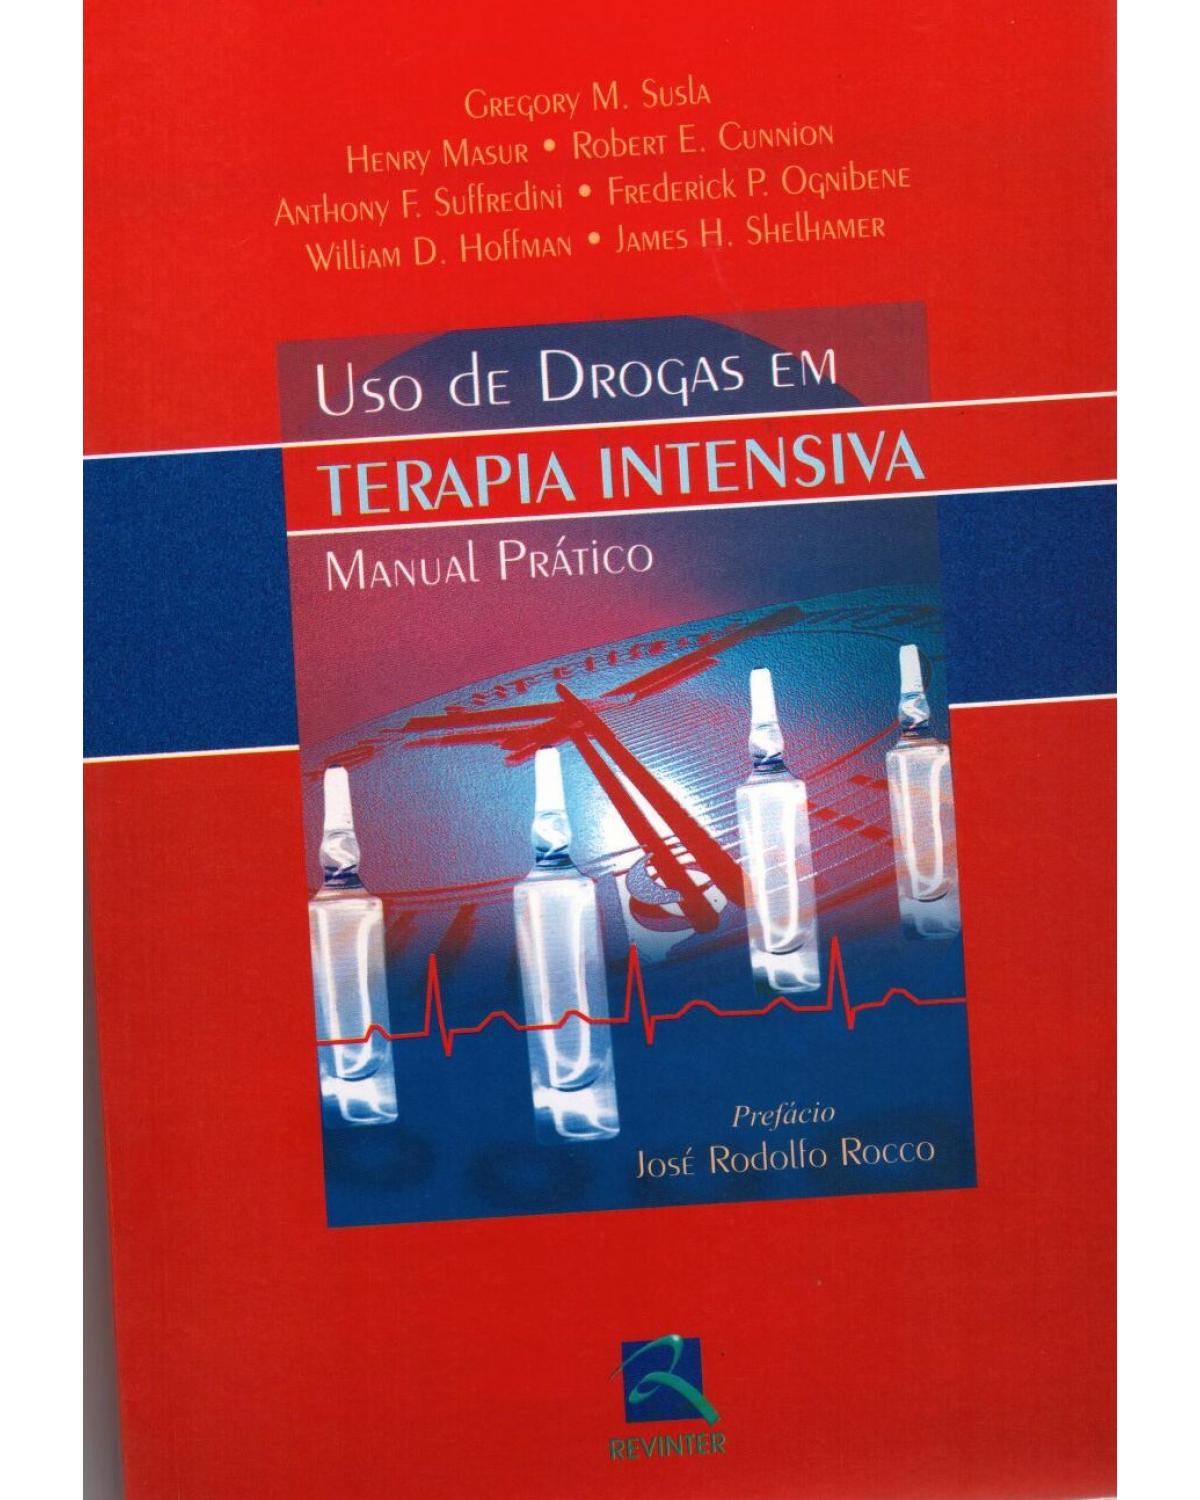 Uso de drogas em terapia intensiva - manual prático - 1ª Edição | 2002